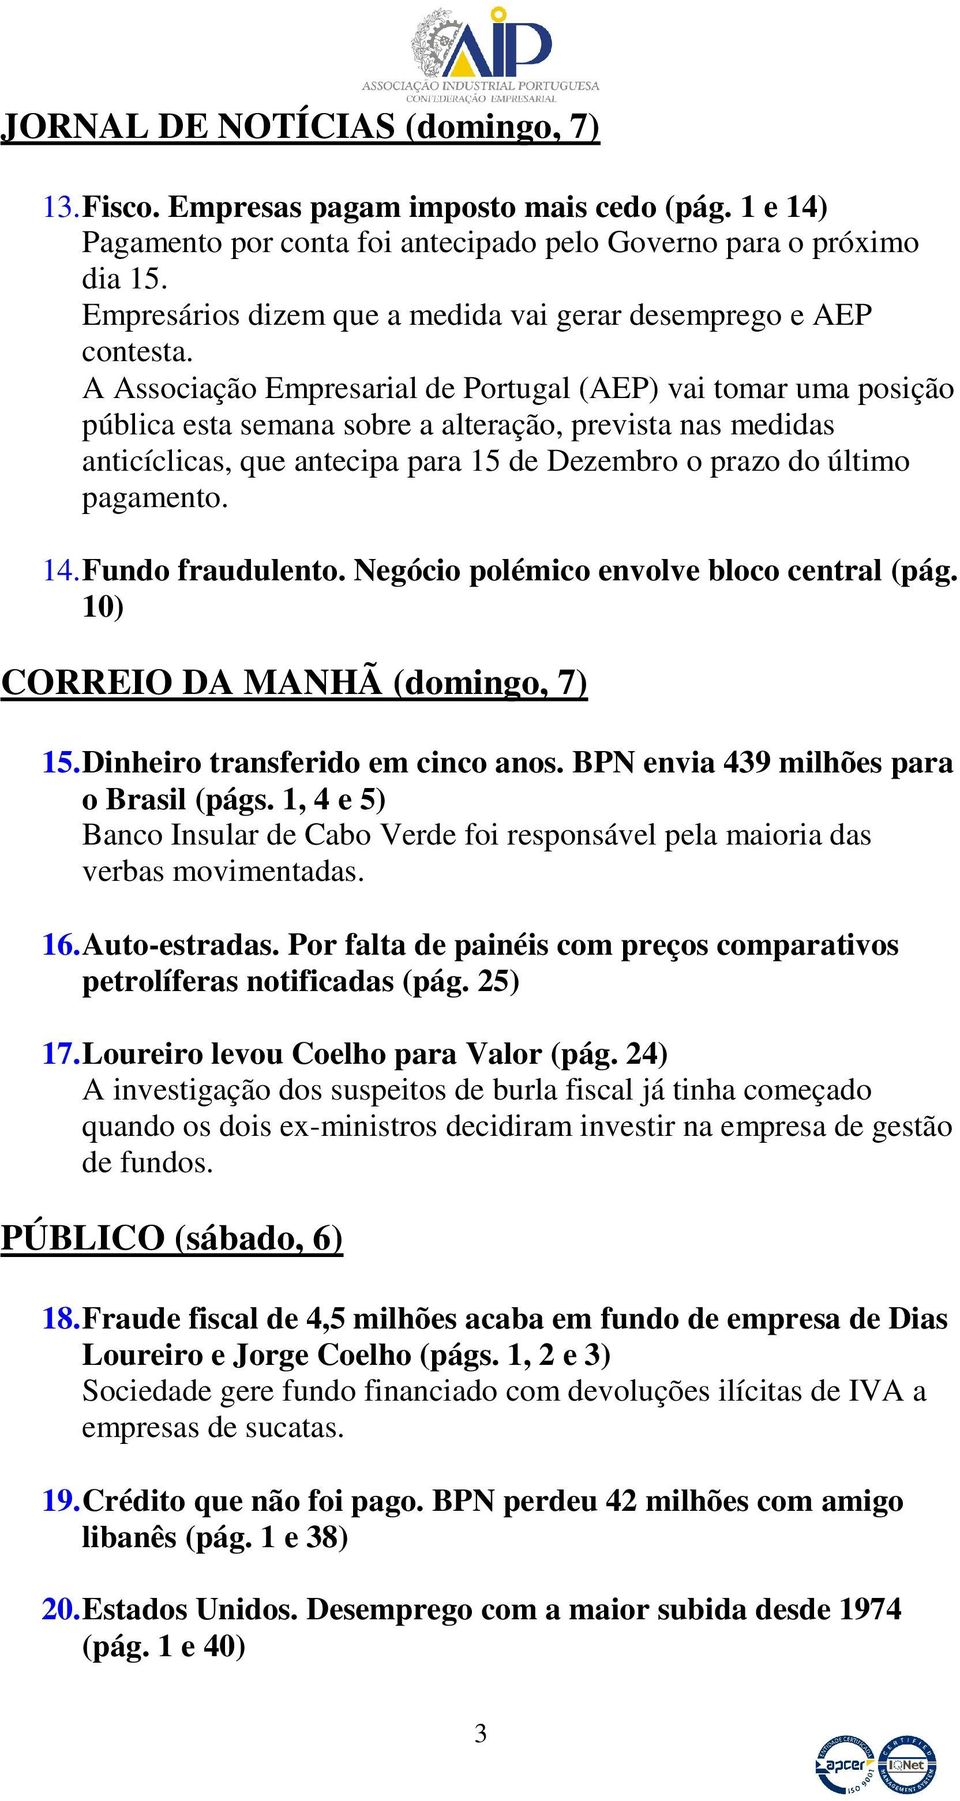 A Associação Empresarial de Portugal (AEP) vai tomar uma posição pública esta semana sobre a alteração, prevista nas medidas anticíclicas, que antecipa para 15 de Dezembro o prazo do último pagamento.